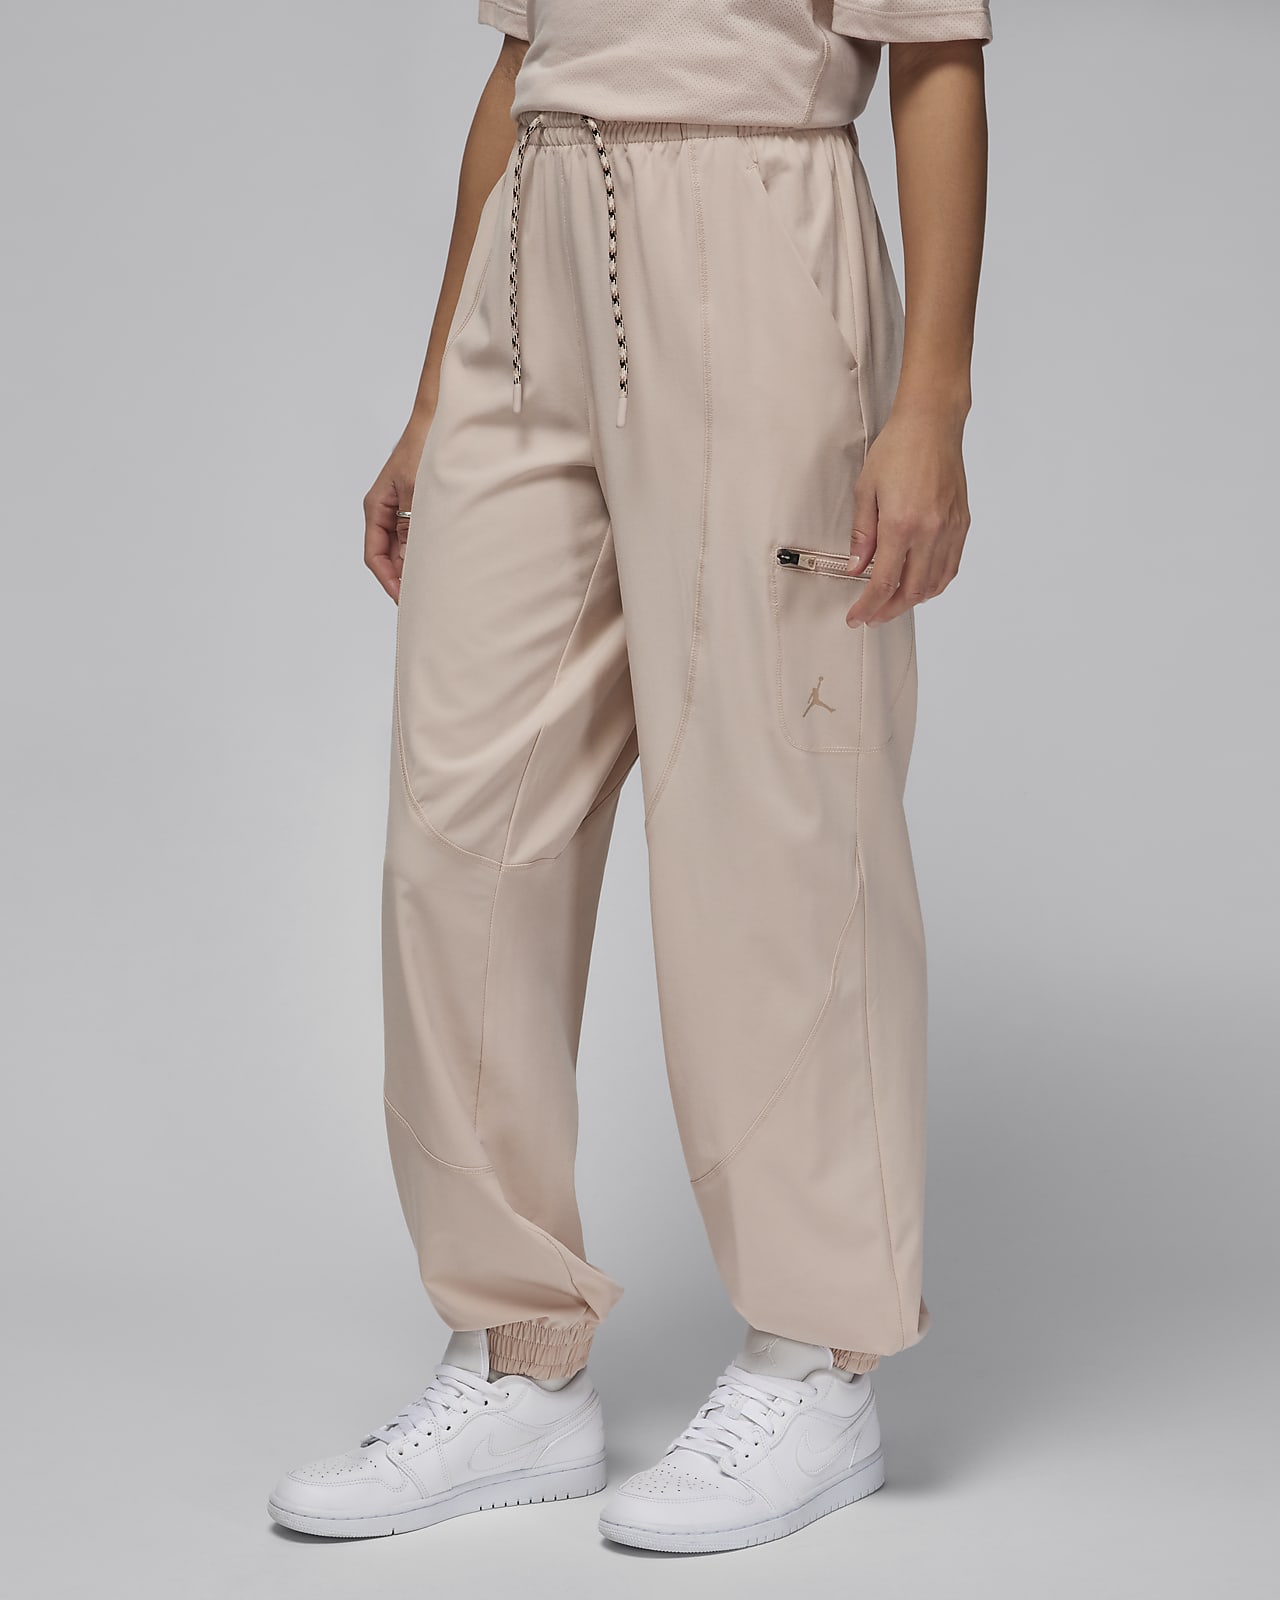 Jordan Sport Pantalons de camals rectes - Dona